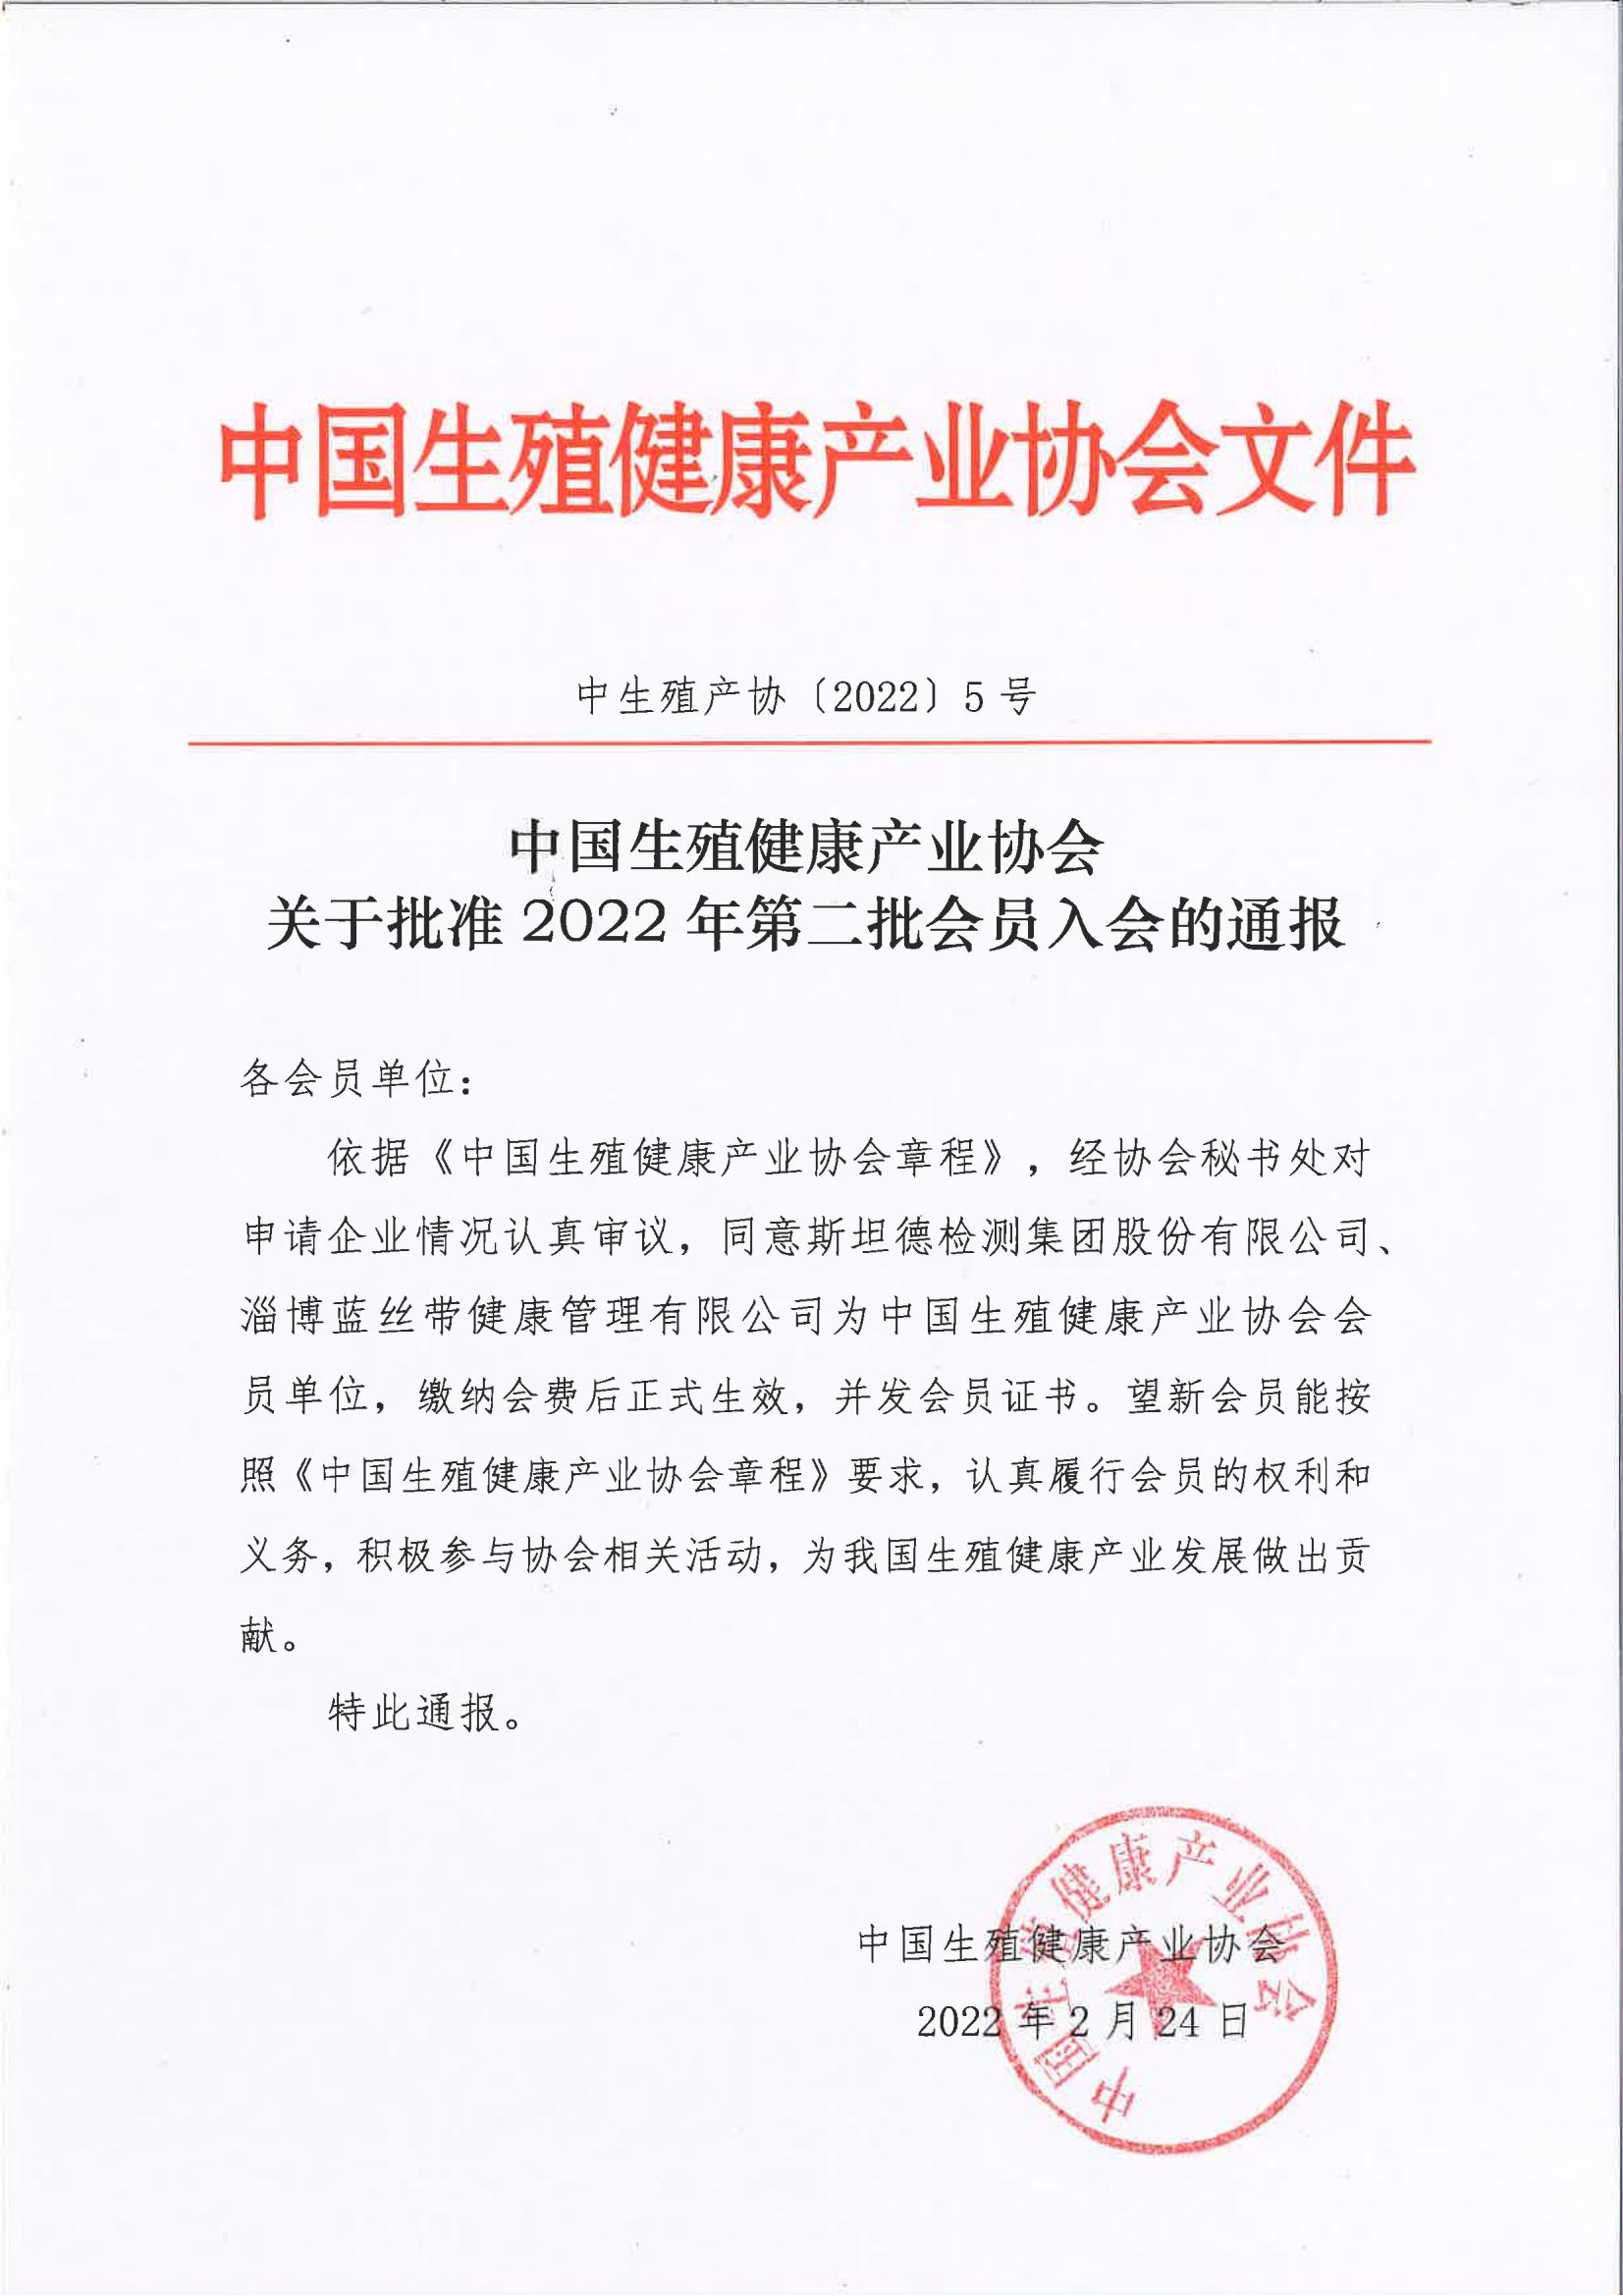 中國生殖健康產業協會關于批準2022年第二批會員單位的通報